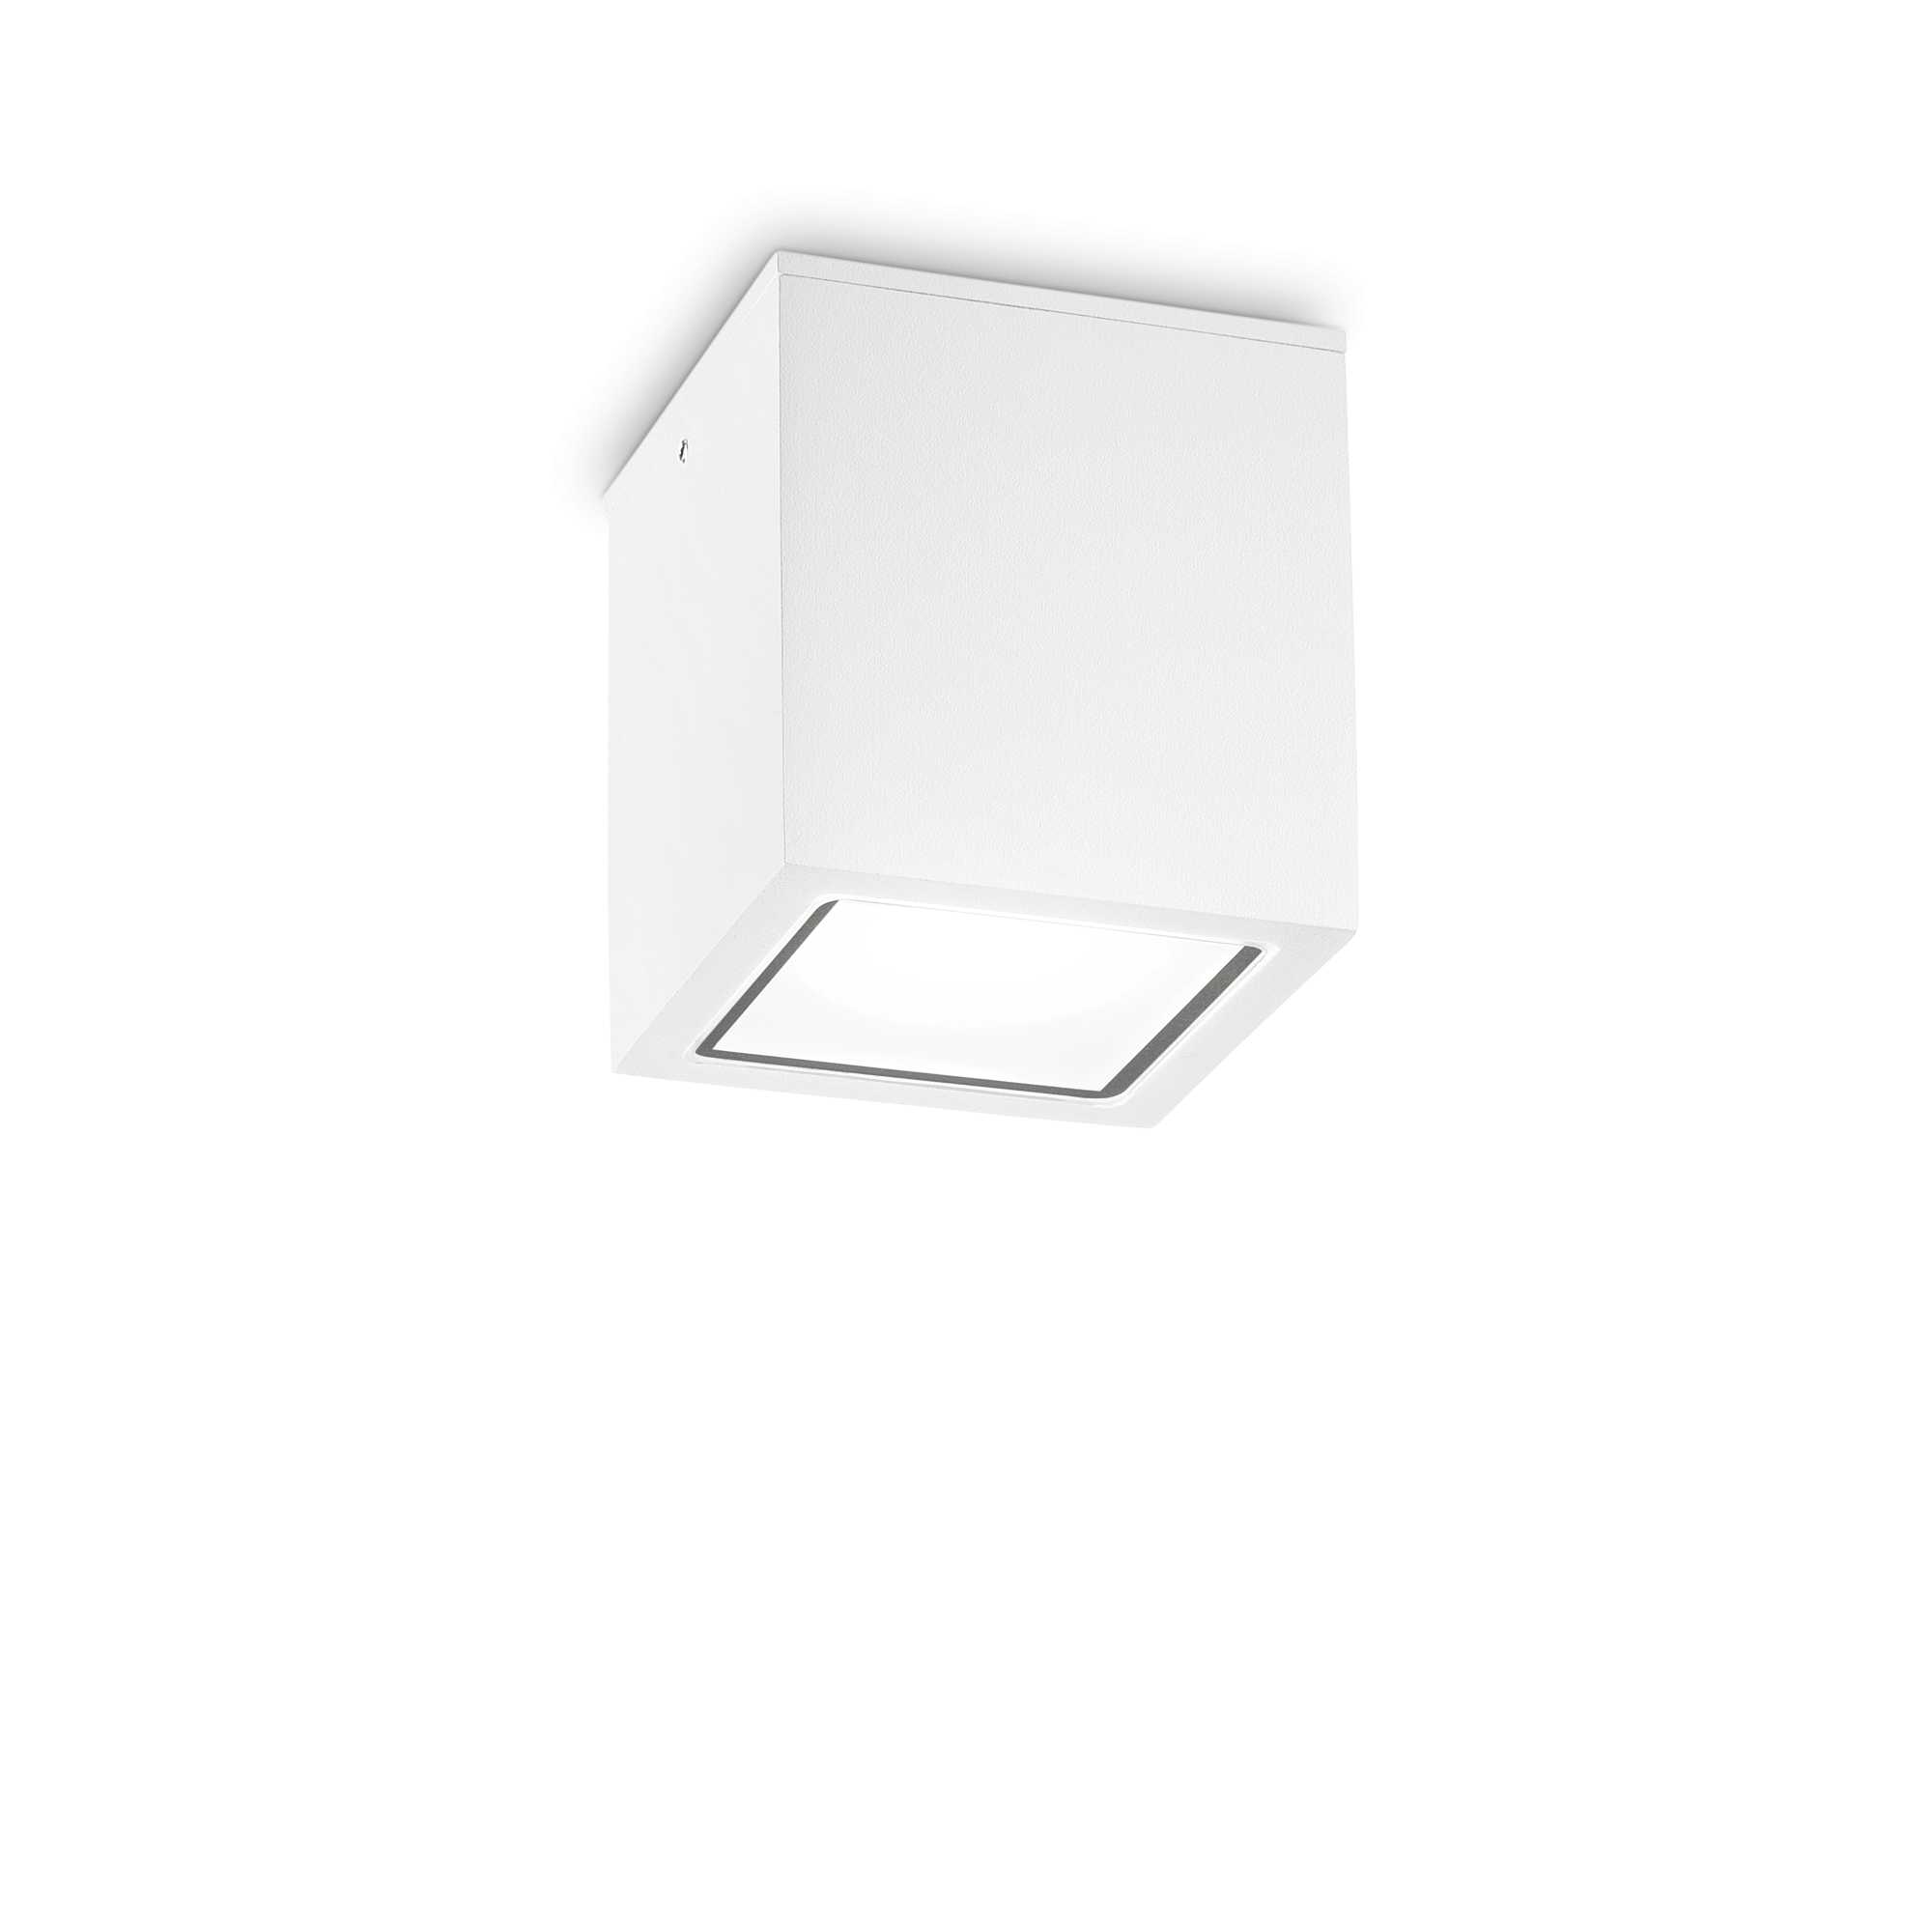 AD hotelska oprema Vanjska stropna lampa Techo pl1 velika- Bijele boje slika proizvoda